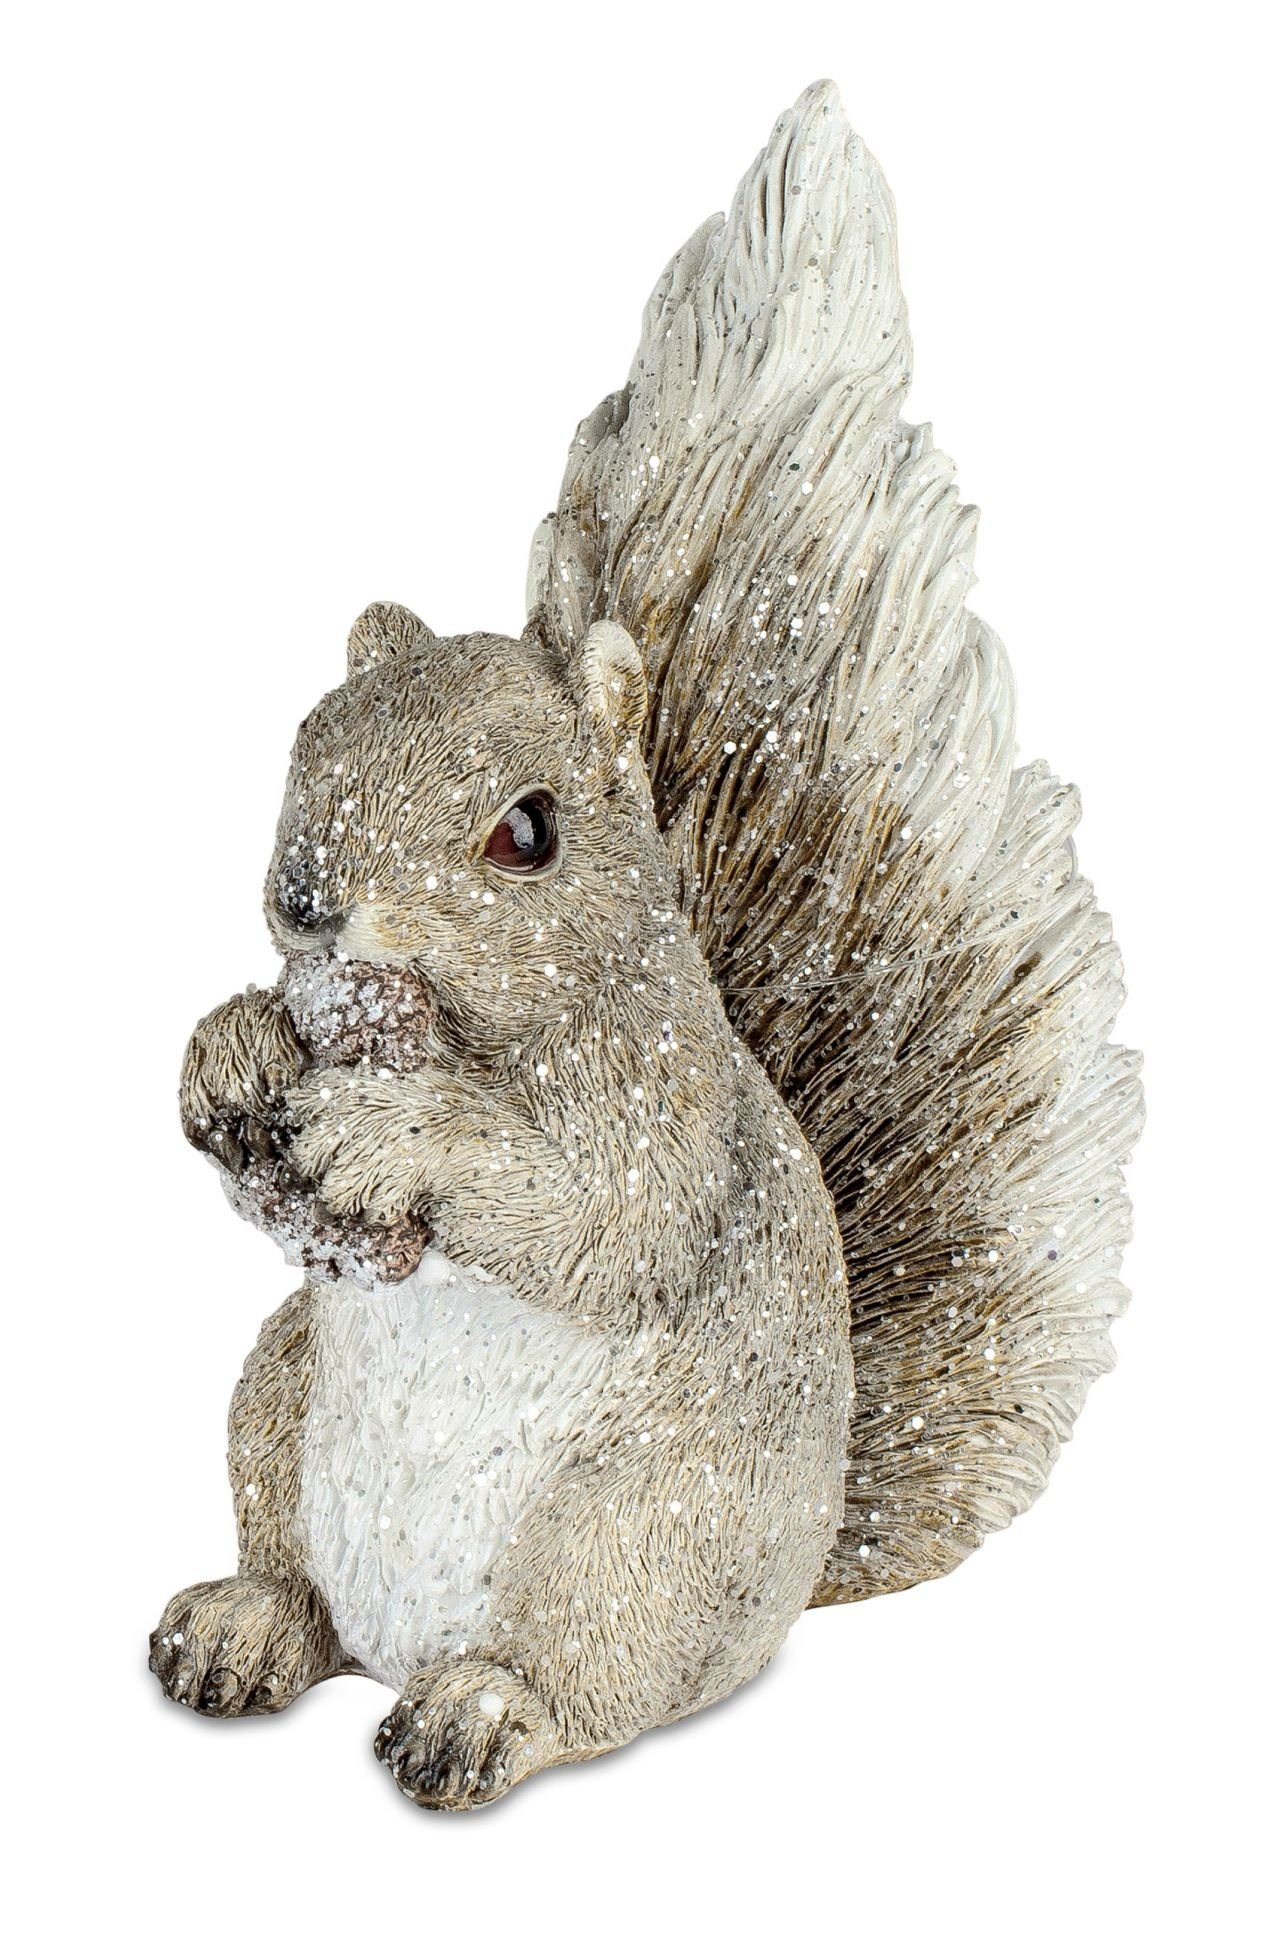 Tierfigur Igel auf Eichhörnchen oder Ast Grau formano Herbst- und Dekofigur Winterdekoration